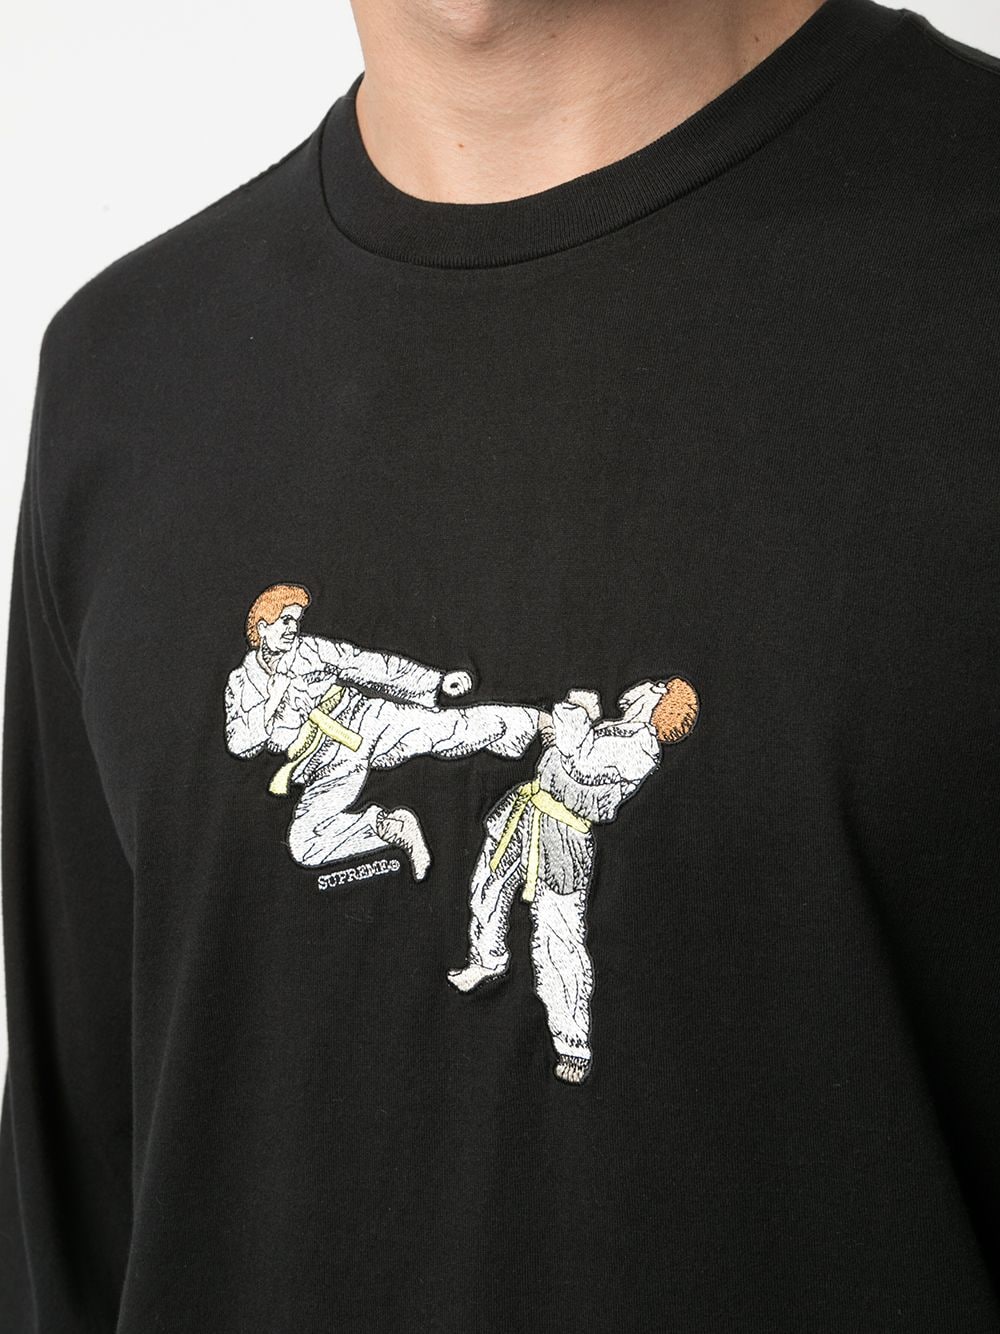 Supreme Karate Print T-shirt - Farfetch